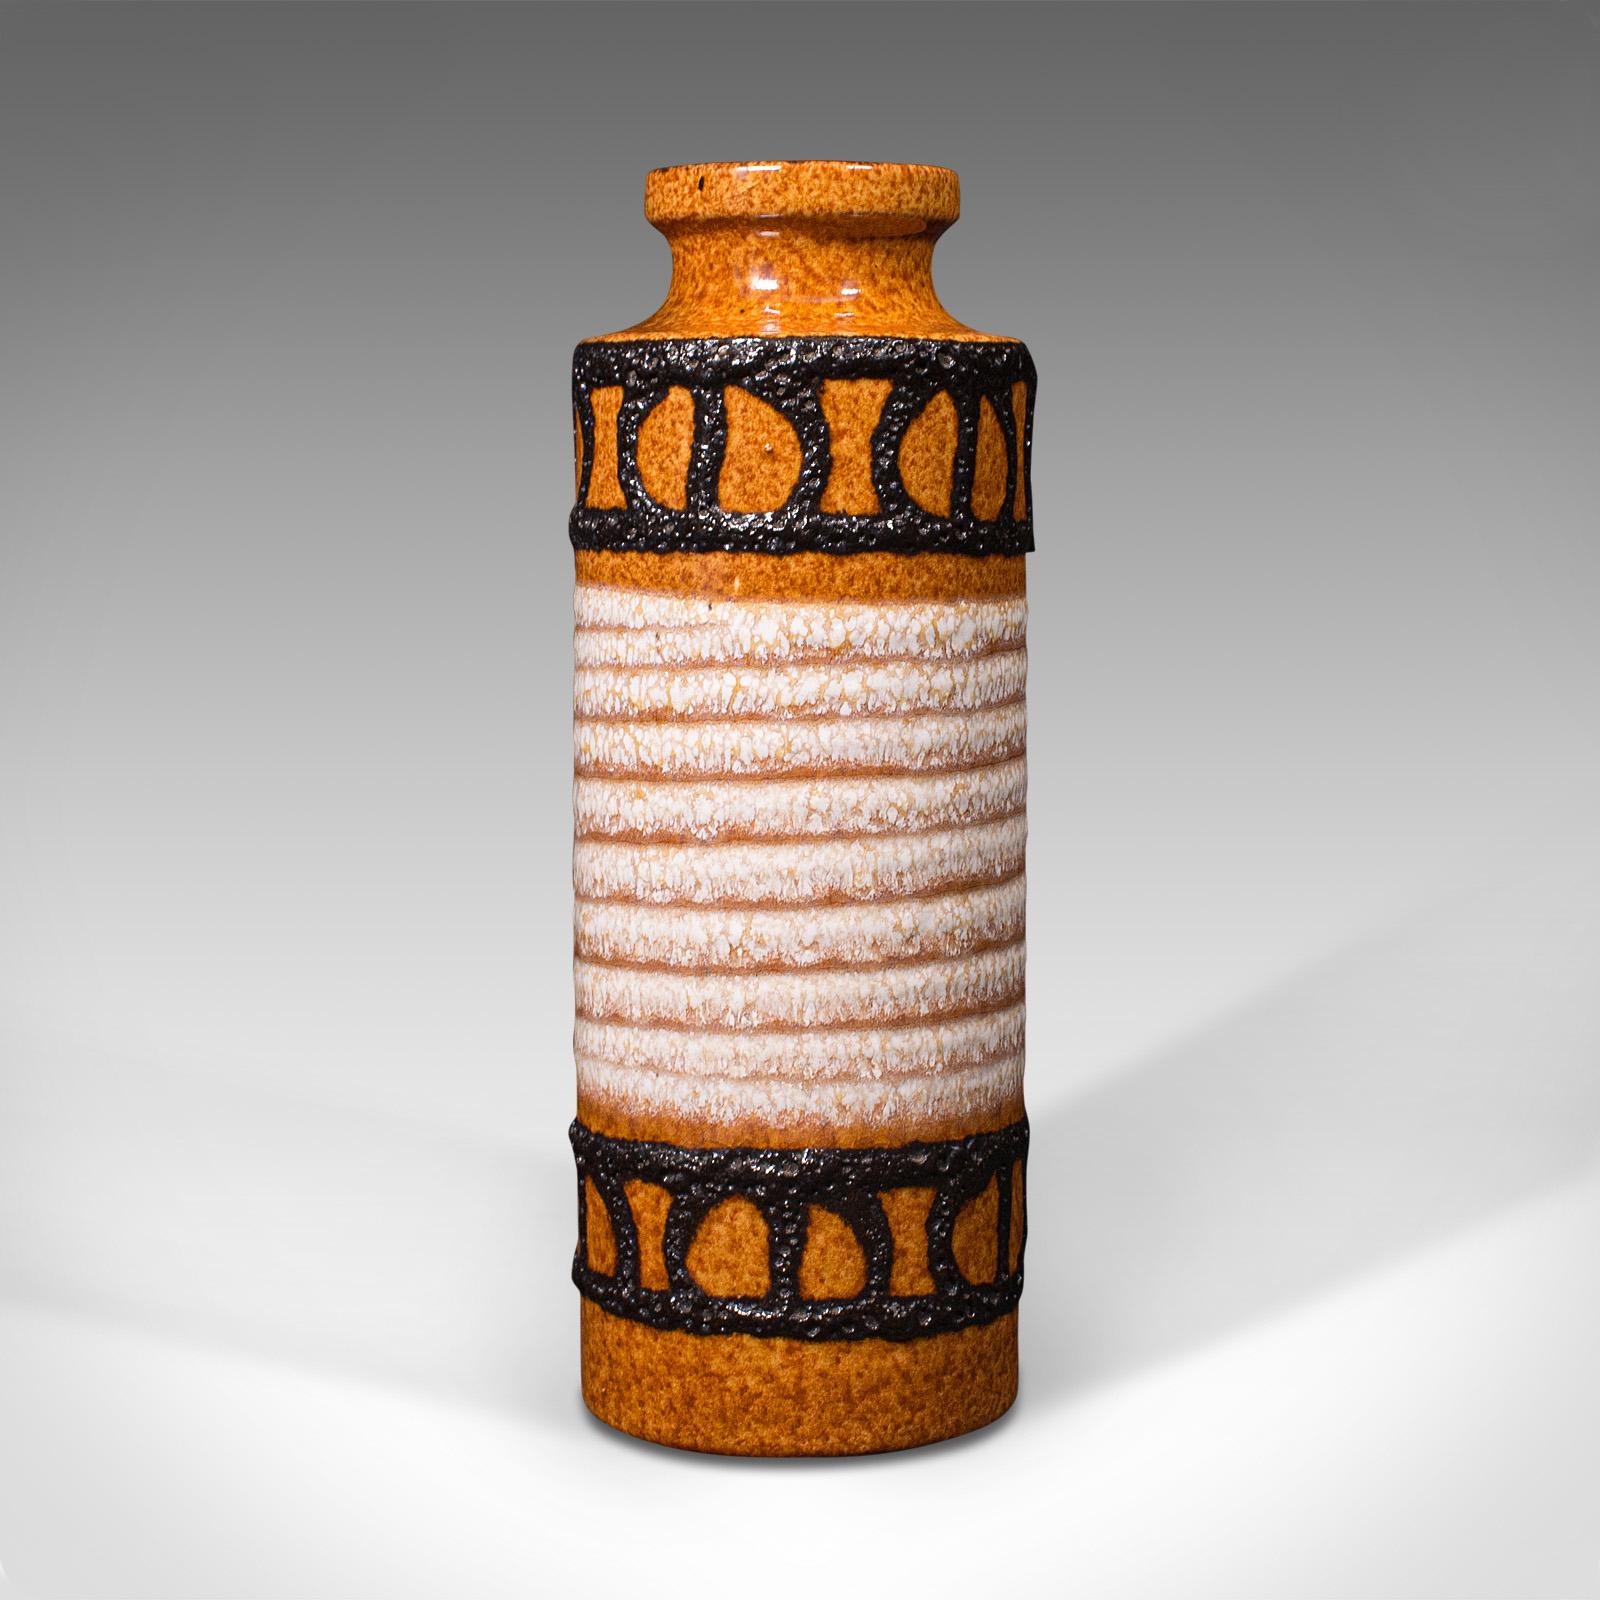 Dies ist eine kleine dekorative Vase im Vintage-Stil. Deutscher Blumentopf aus Lava-Keramik aus der Mitte des 20. Jahrhunderts, ca. 1960.

Eine kühne, lebendige Sträußchenvase mit viel Geschmack aus der Mitte des Jahrhunderts
Mit wünschenswerter